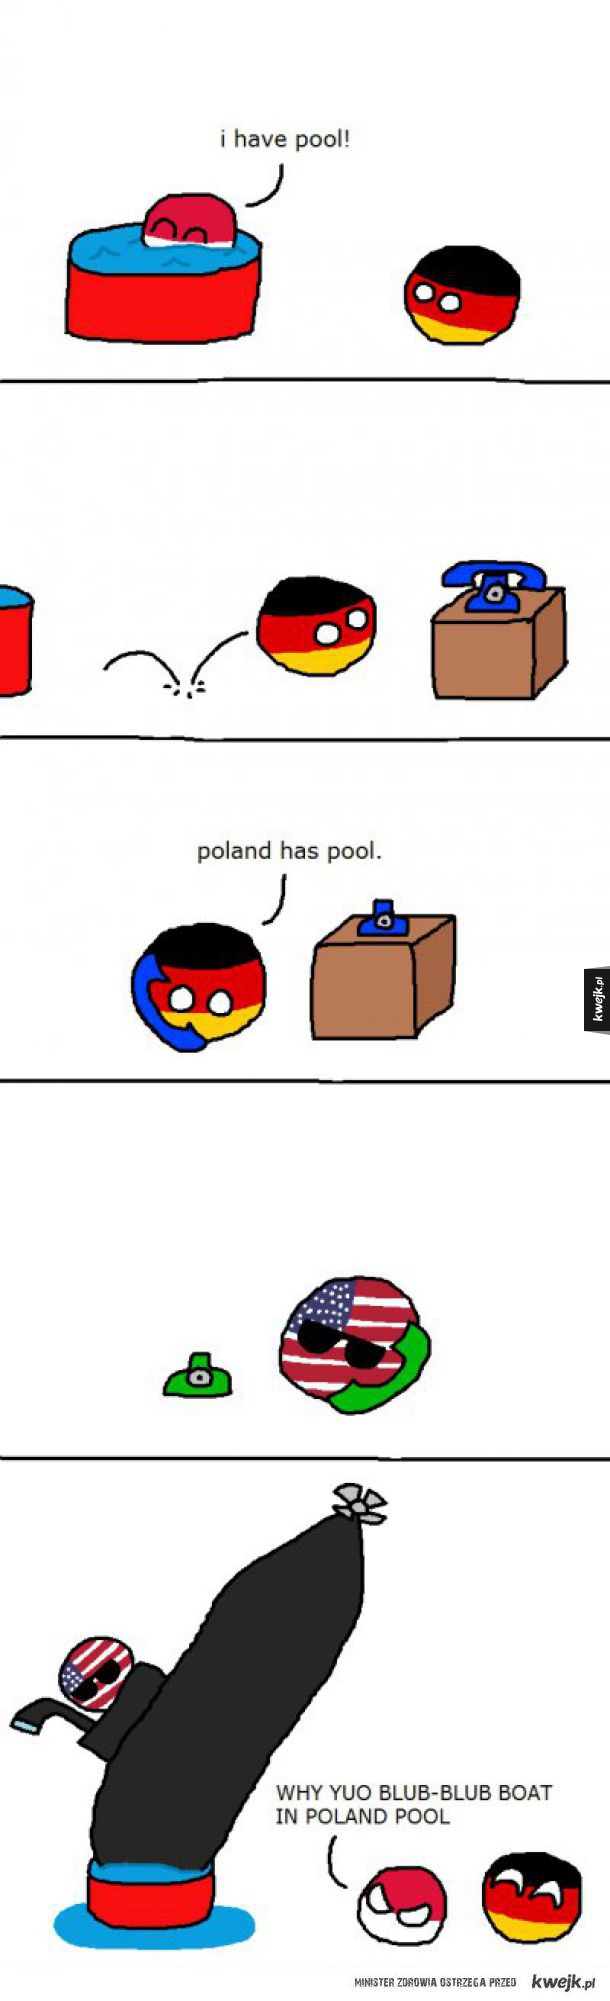 PolandBall